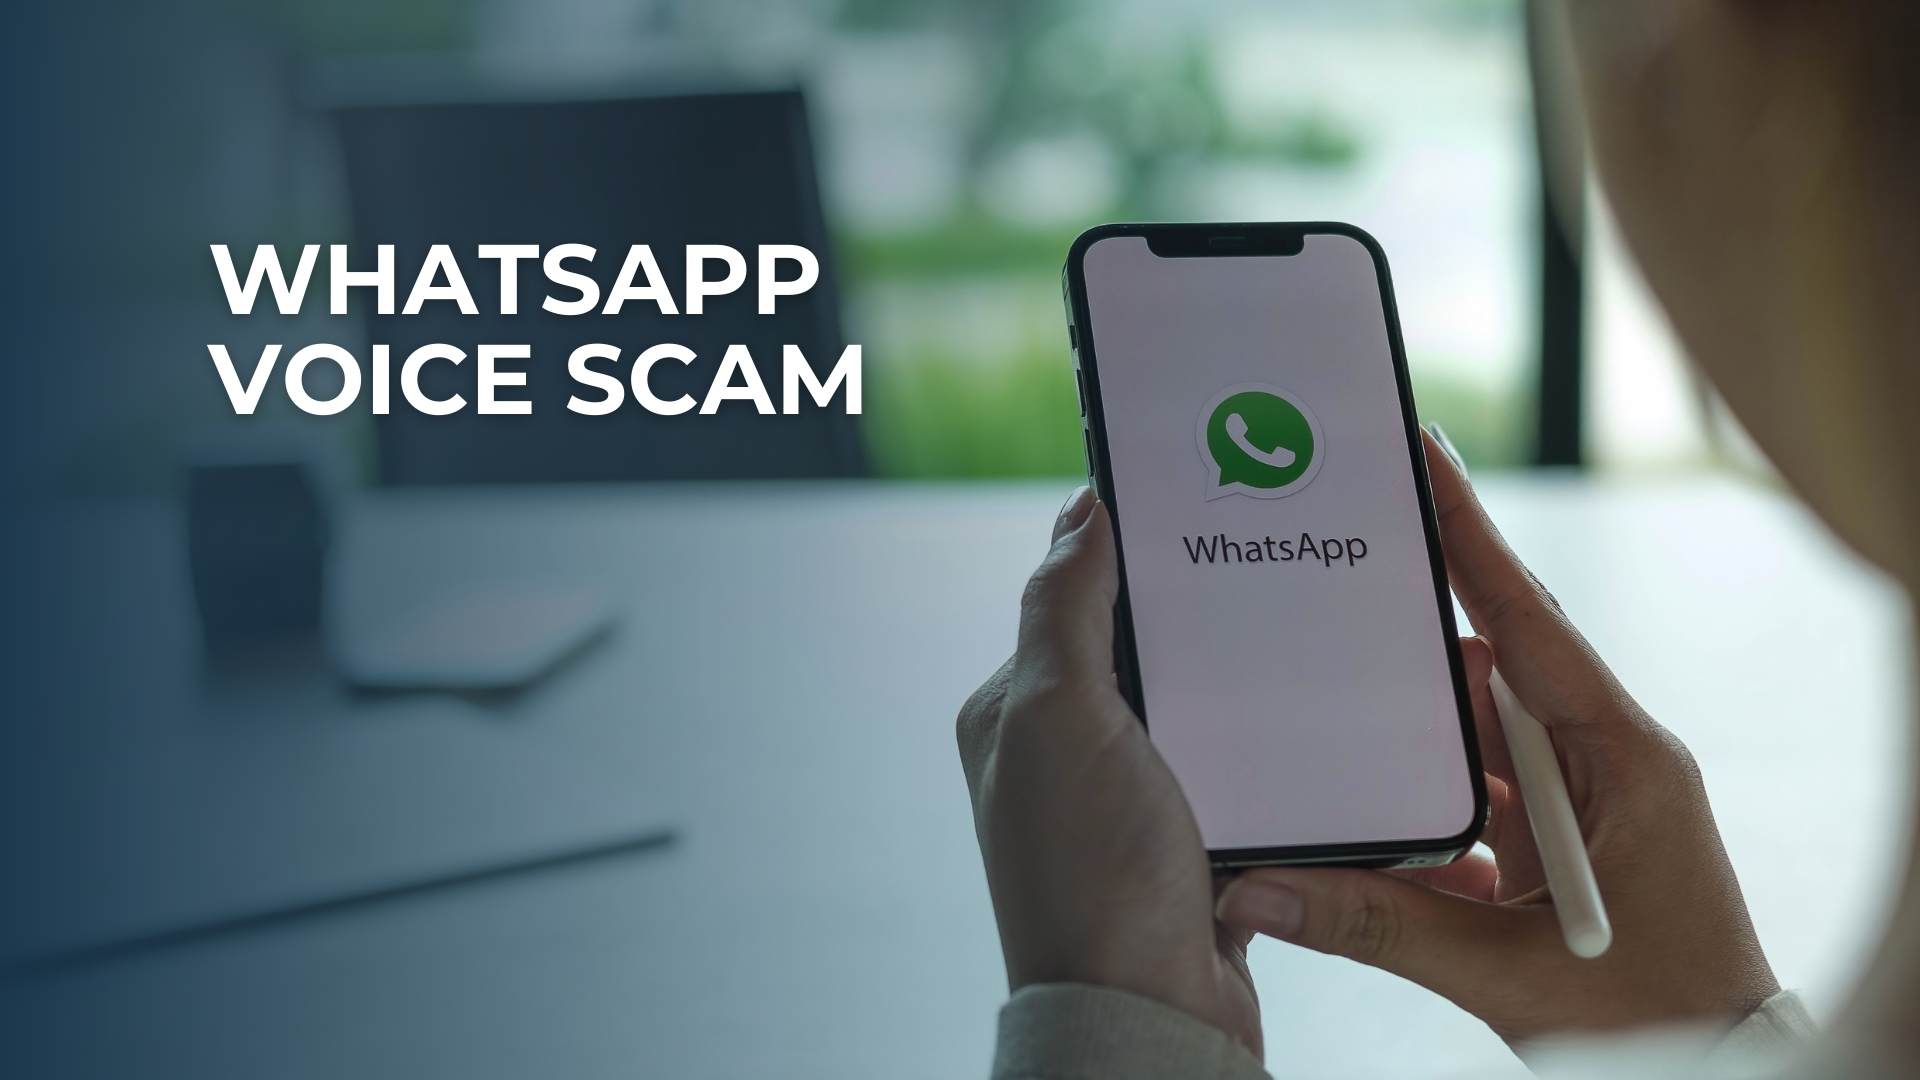 WhatsApp Voice Scam